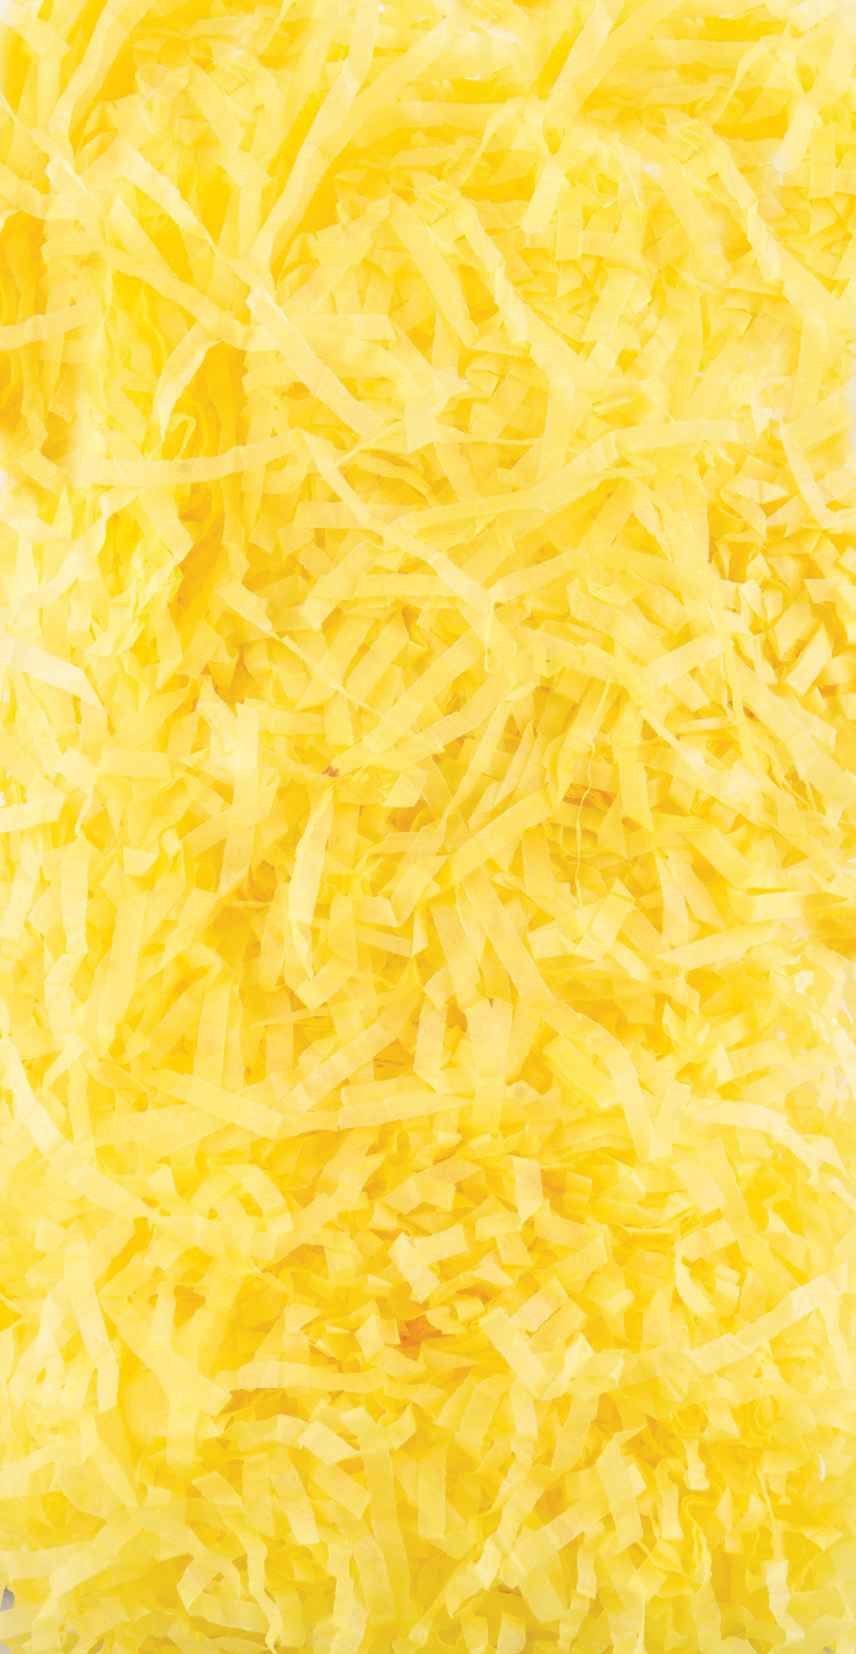 Shredded Tissue Paper 20g - Yellow